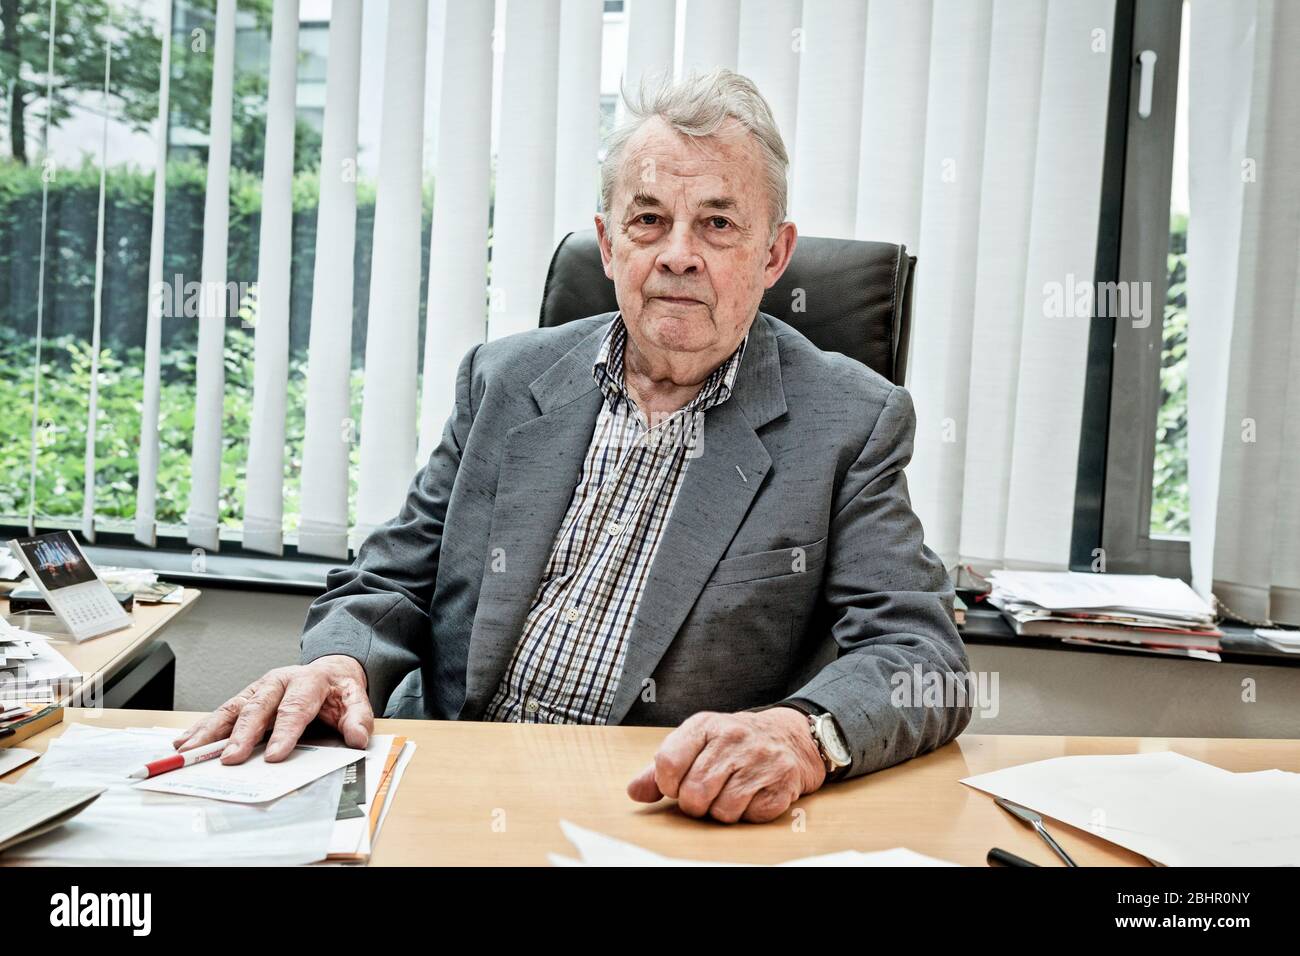 Témoin contemporain le professeur Walther Troeger était maire du village olympique de Munich et a mené les négociations avec les terroristes lors de l'attaque contre l'équipe olympique israélienne en 1972. Banque D'Images